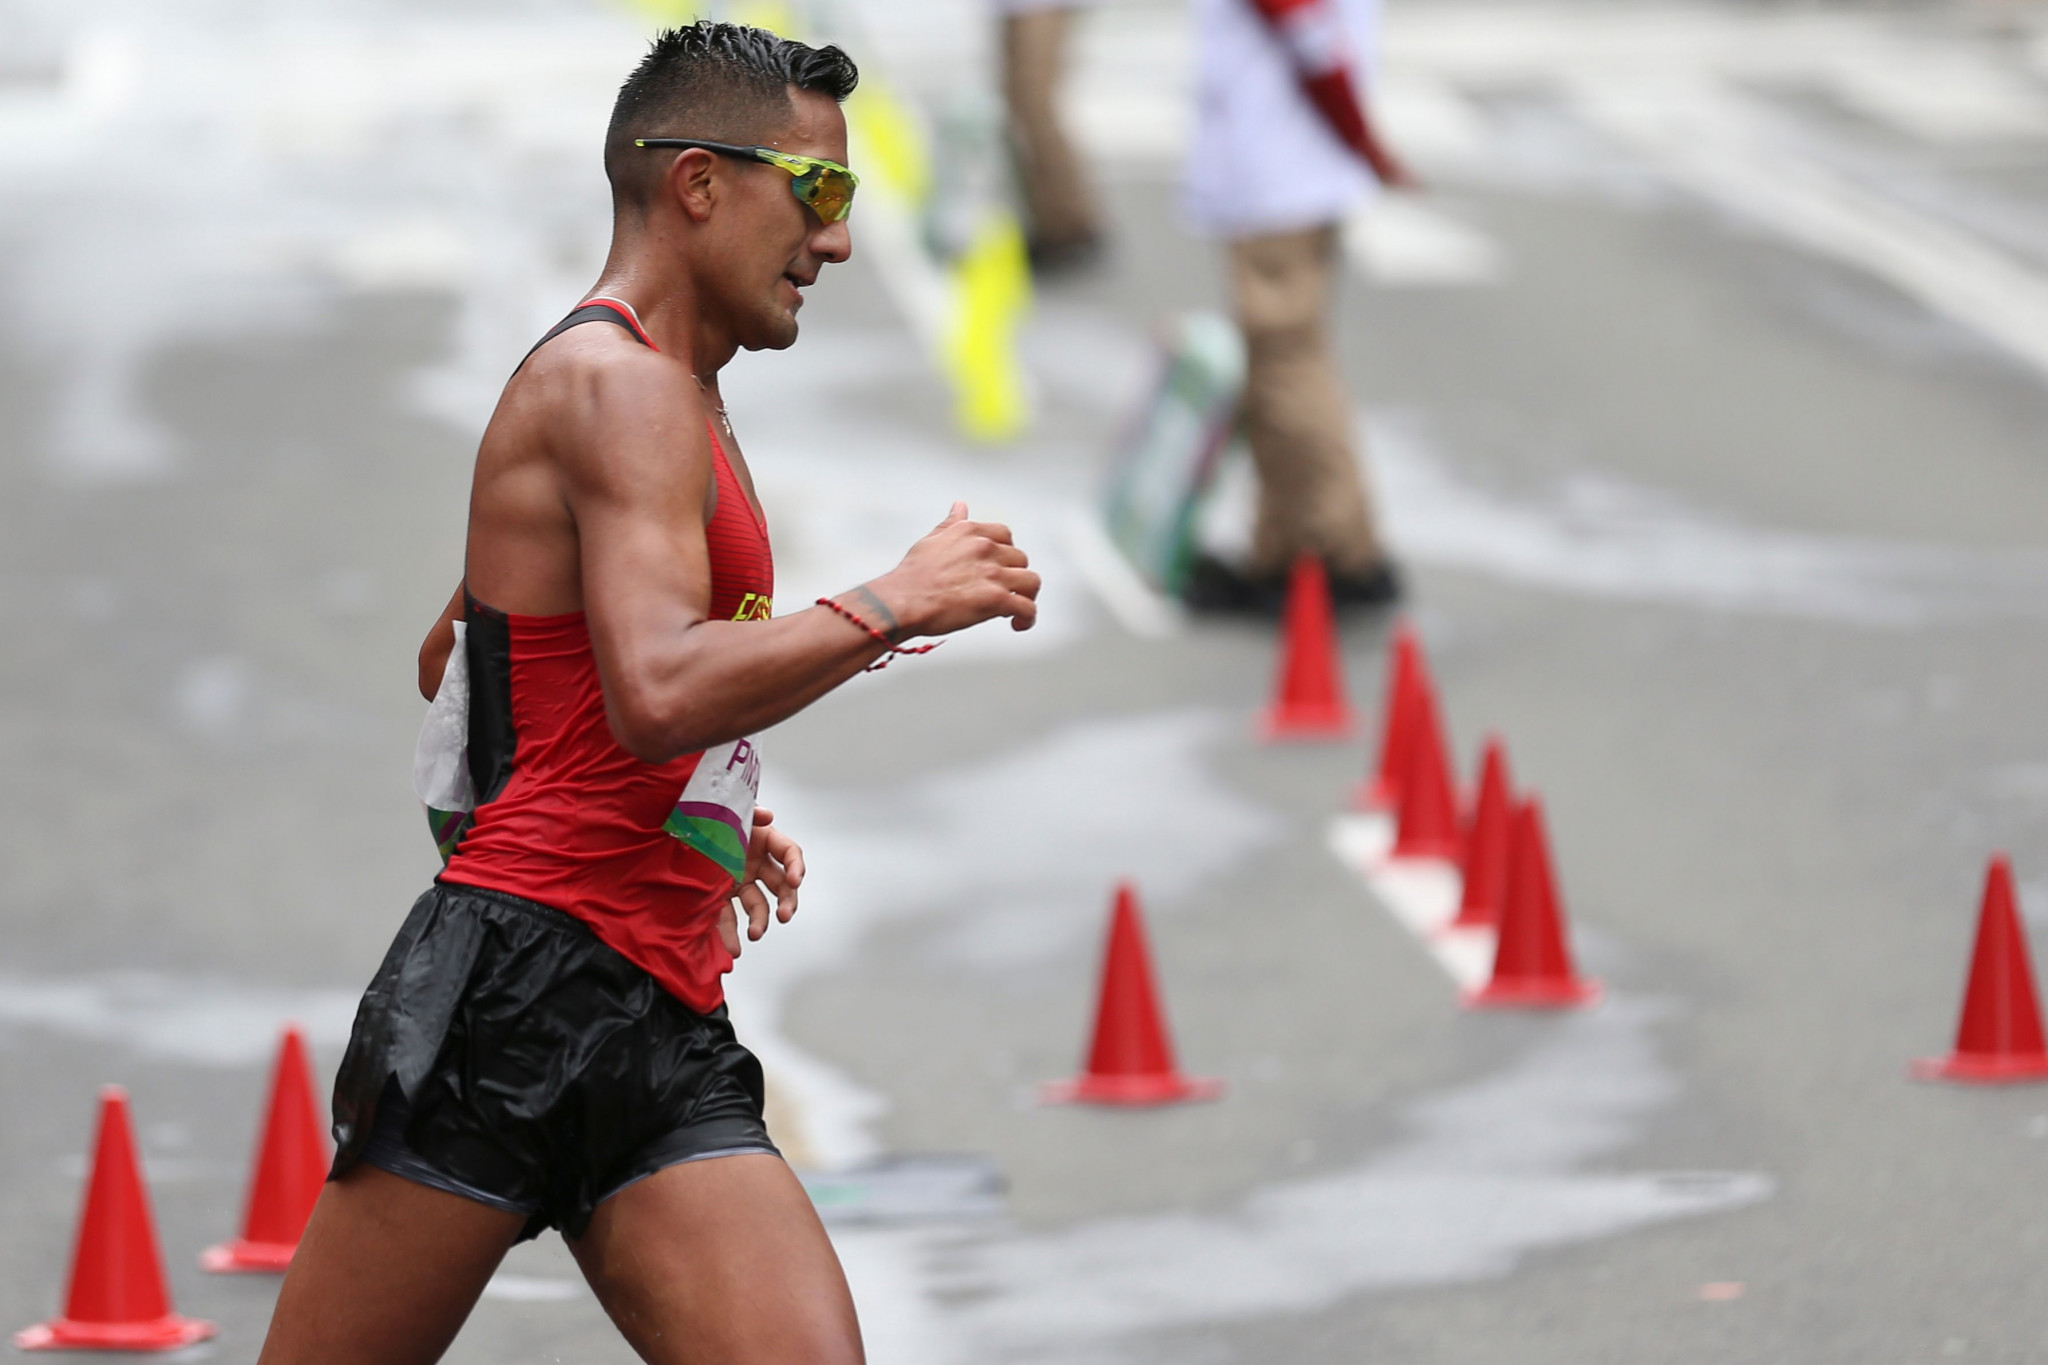 Brian Pintado won the men's 20km race at the Grande Prémio Internacional de Rio Maior em Marcha Atlética ©Getty Images